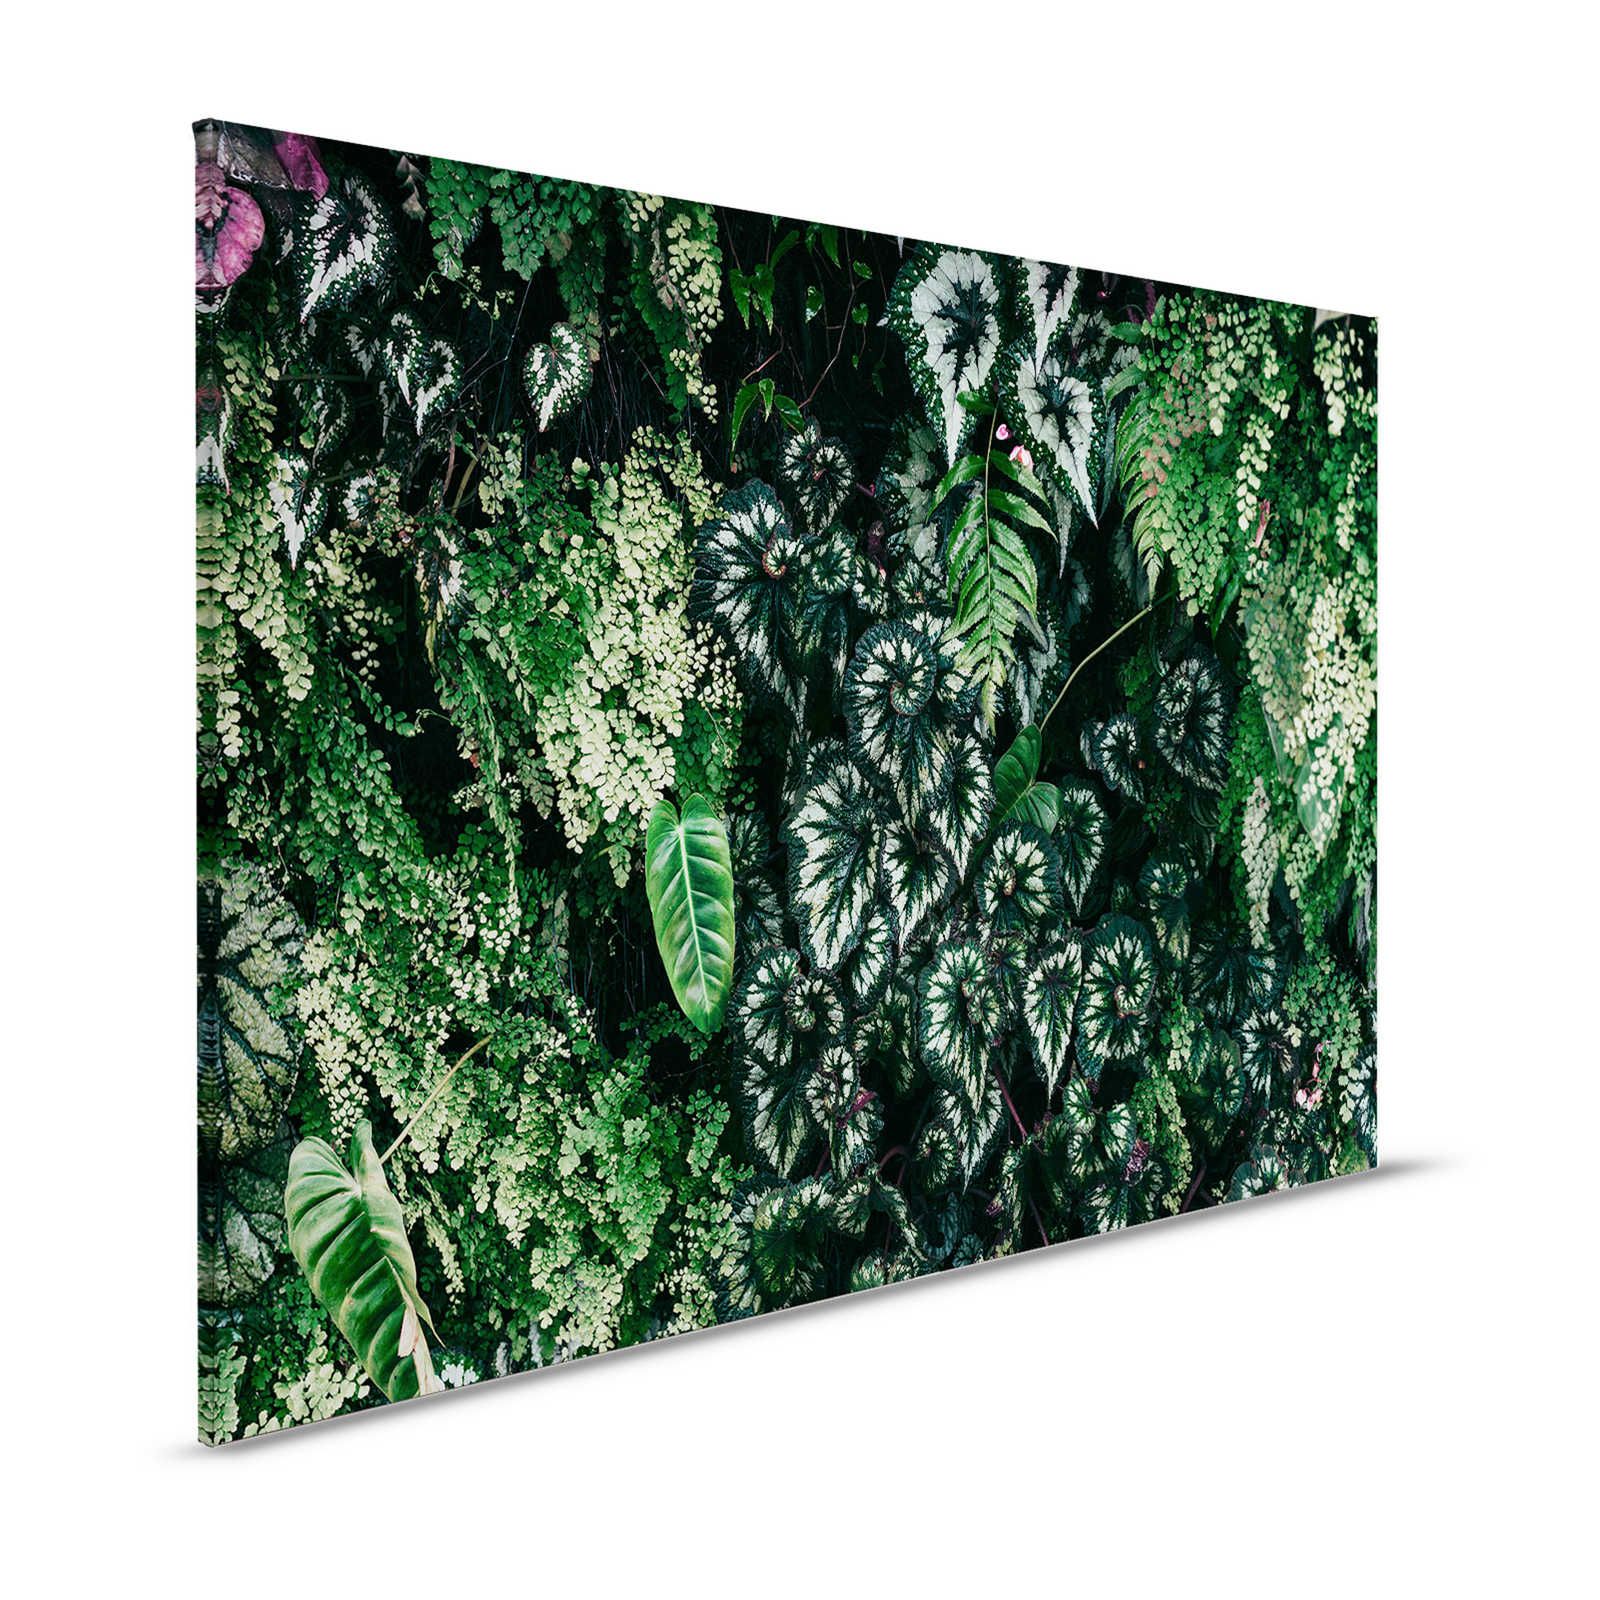 Deep Green 2 - Pintura sobre lienzo Matorral de follaje, helechos y plantas colgantes - 1,20 m x 0,80 m
